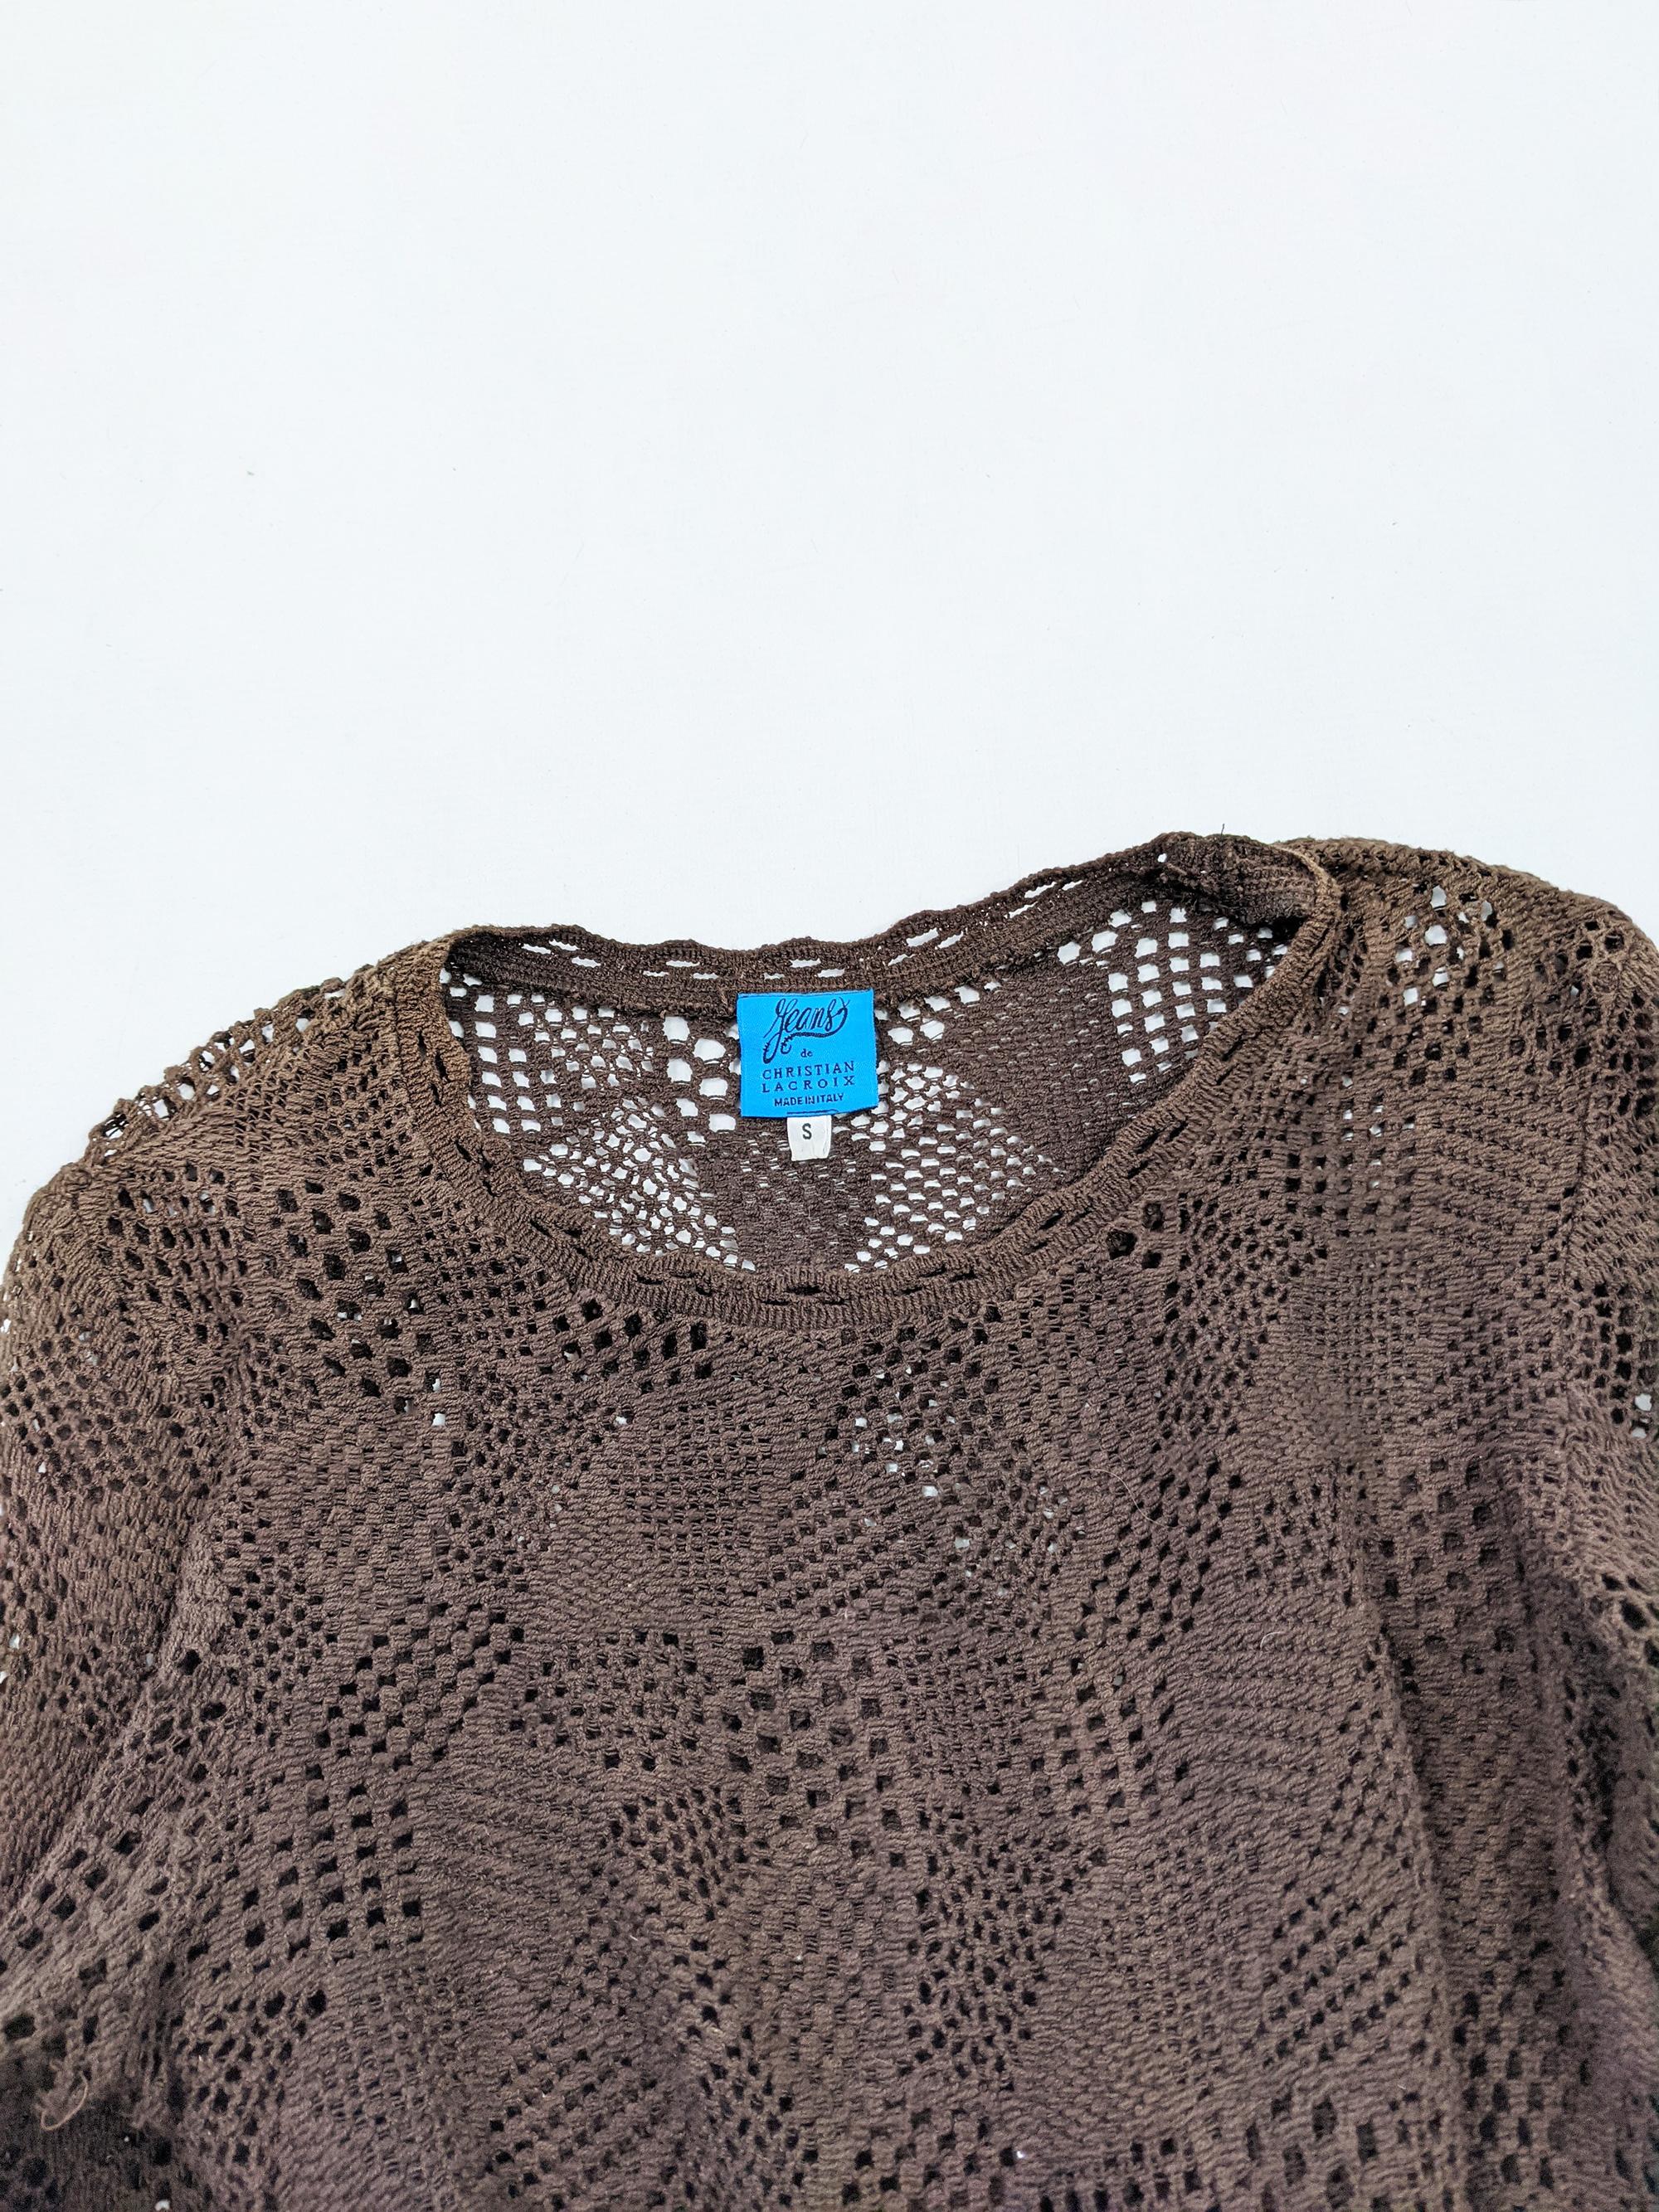 Christian Lacroix Vintage Brown Crochet Dress 3